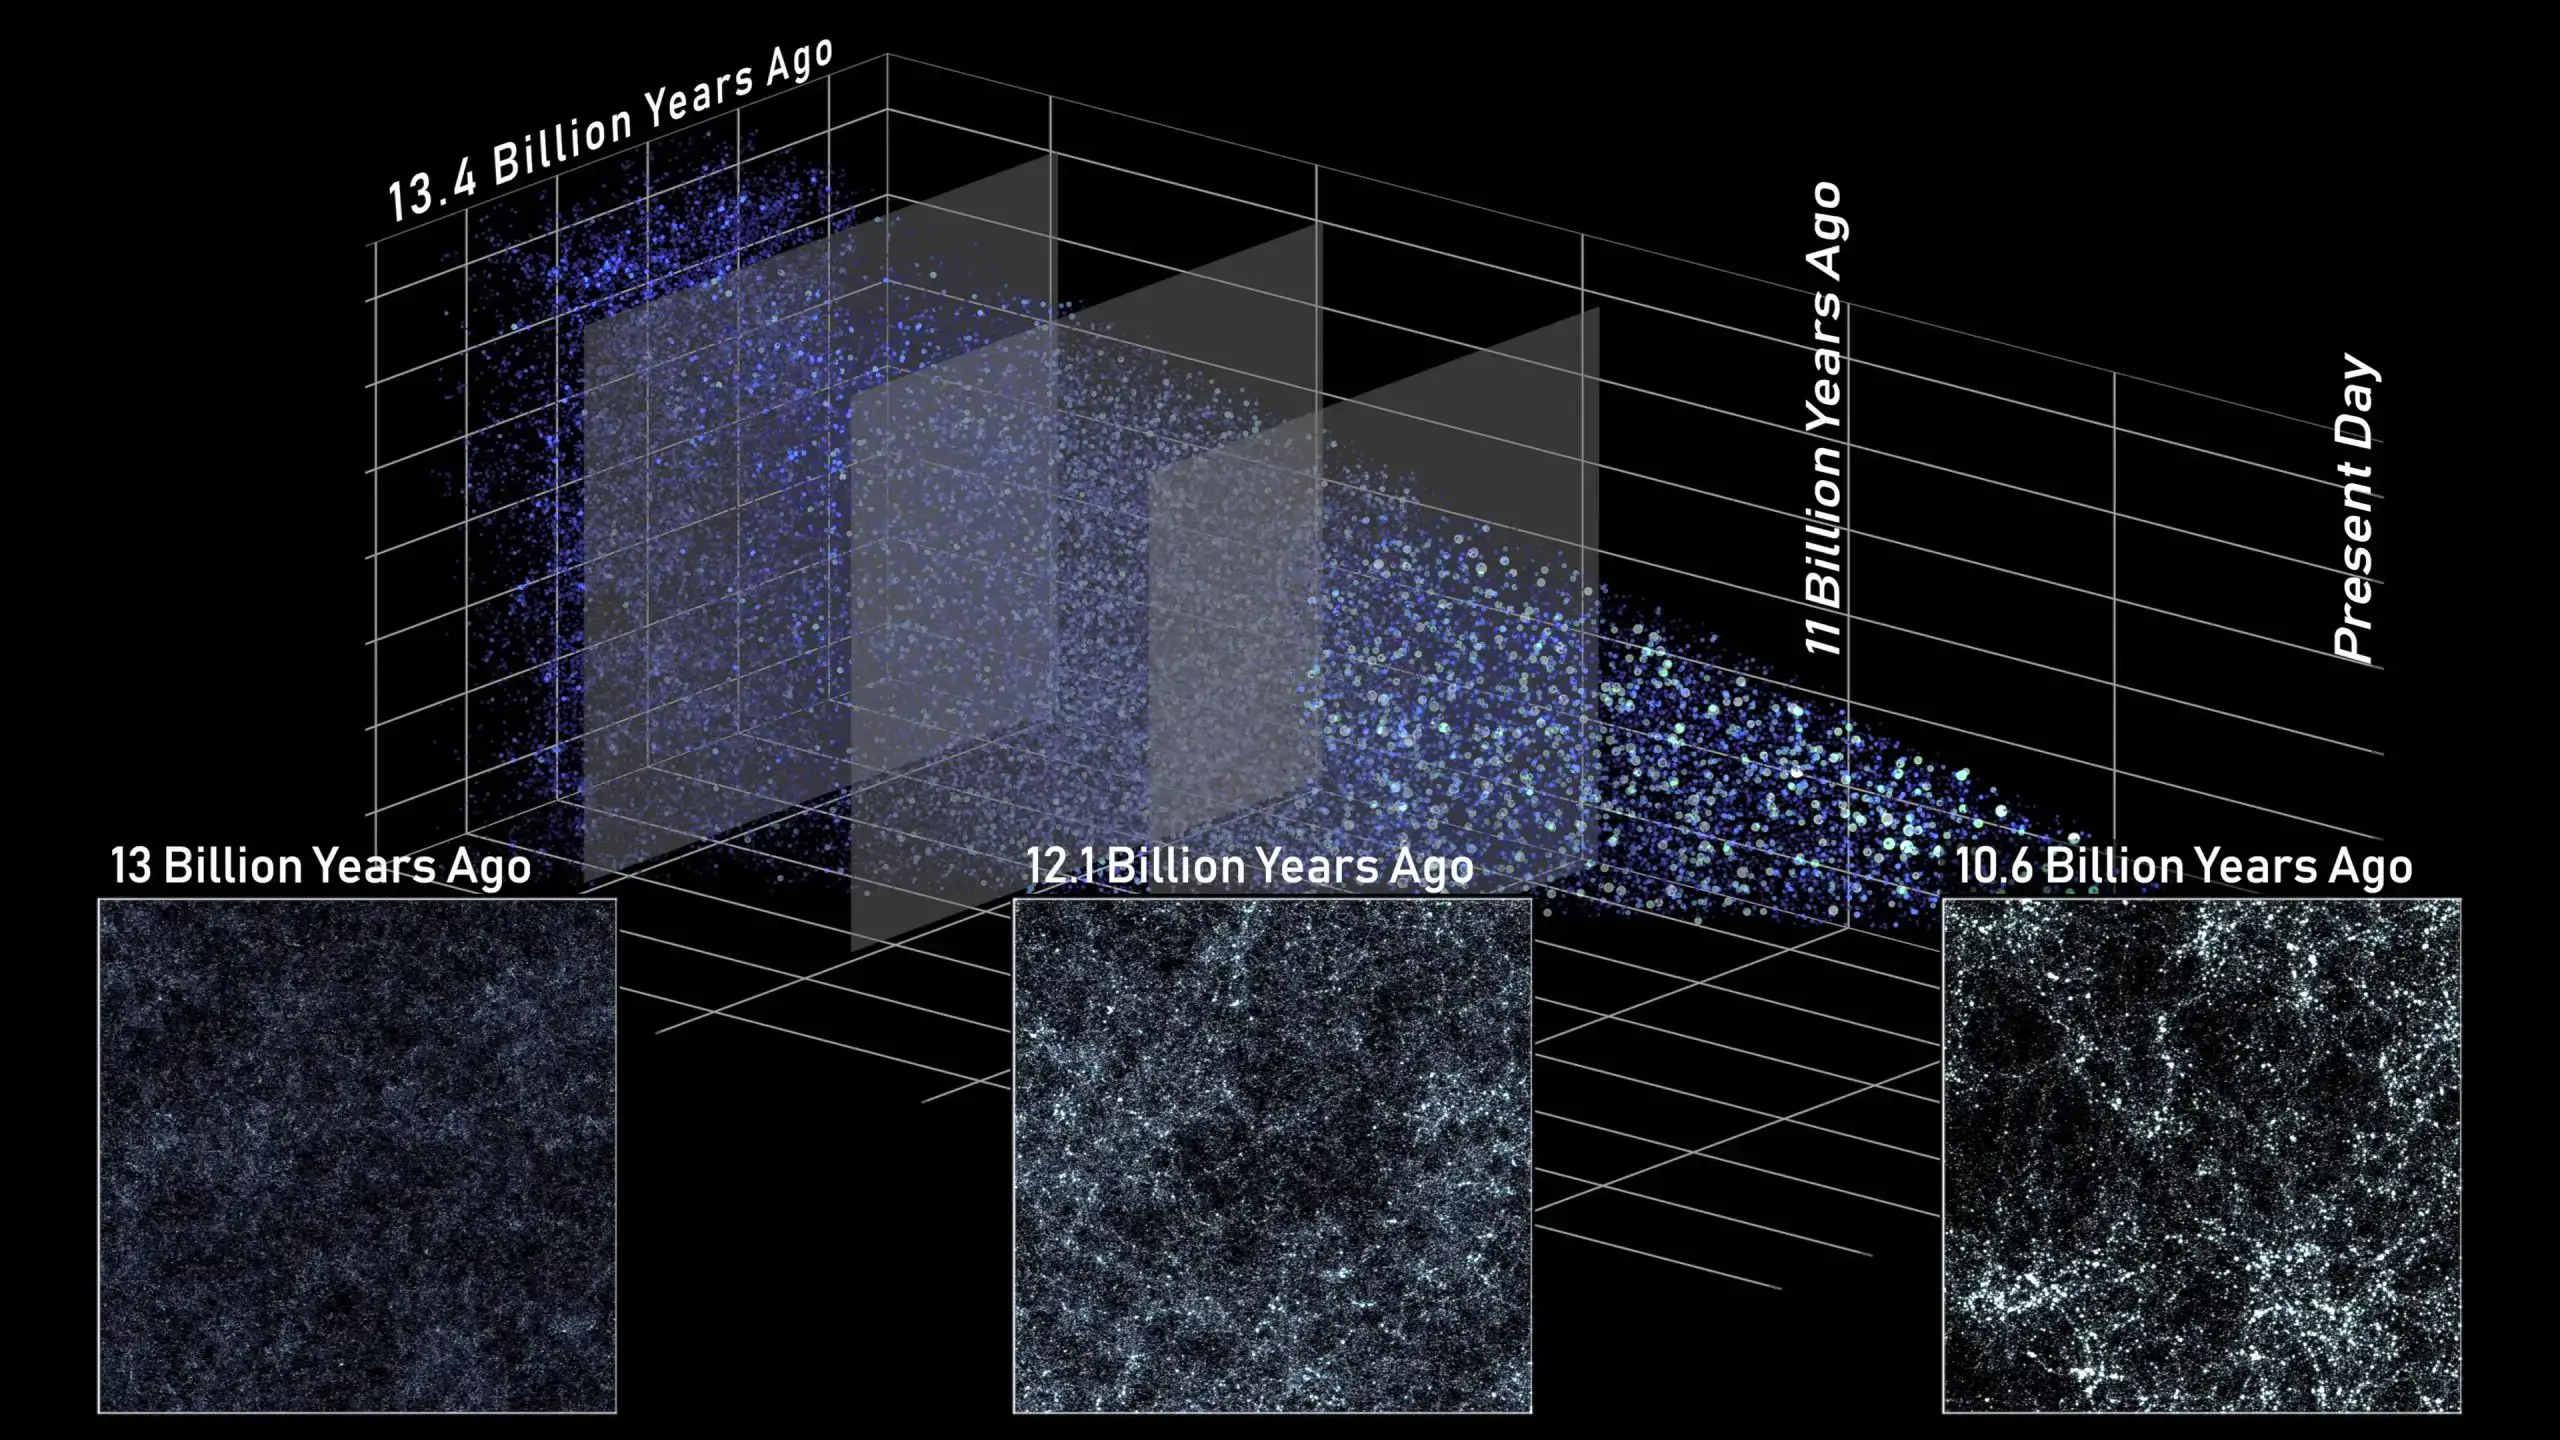 במראה מהצד הזה של הדמיית היקום, כל נקודה מייצגת גלקסיה שהגודל והבהירות שלה מתאימים למסה שלה. פרוסות מעידנים שונים מראות איך רומן יוכל לראות את היקום לאורך ההיסטוריה הקוסמית. אסטרונומים ישתמשו בתצפיות האלה כדי להבין איך ההתפתחות הקוסמית הובילה למבנה דמוי הרשת שאנו רואים כיום. קרדיט: NASA’s Goddard Space Flight Center and A. Yung
